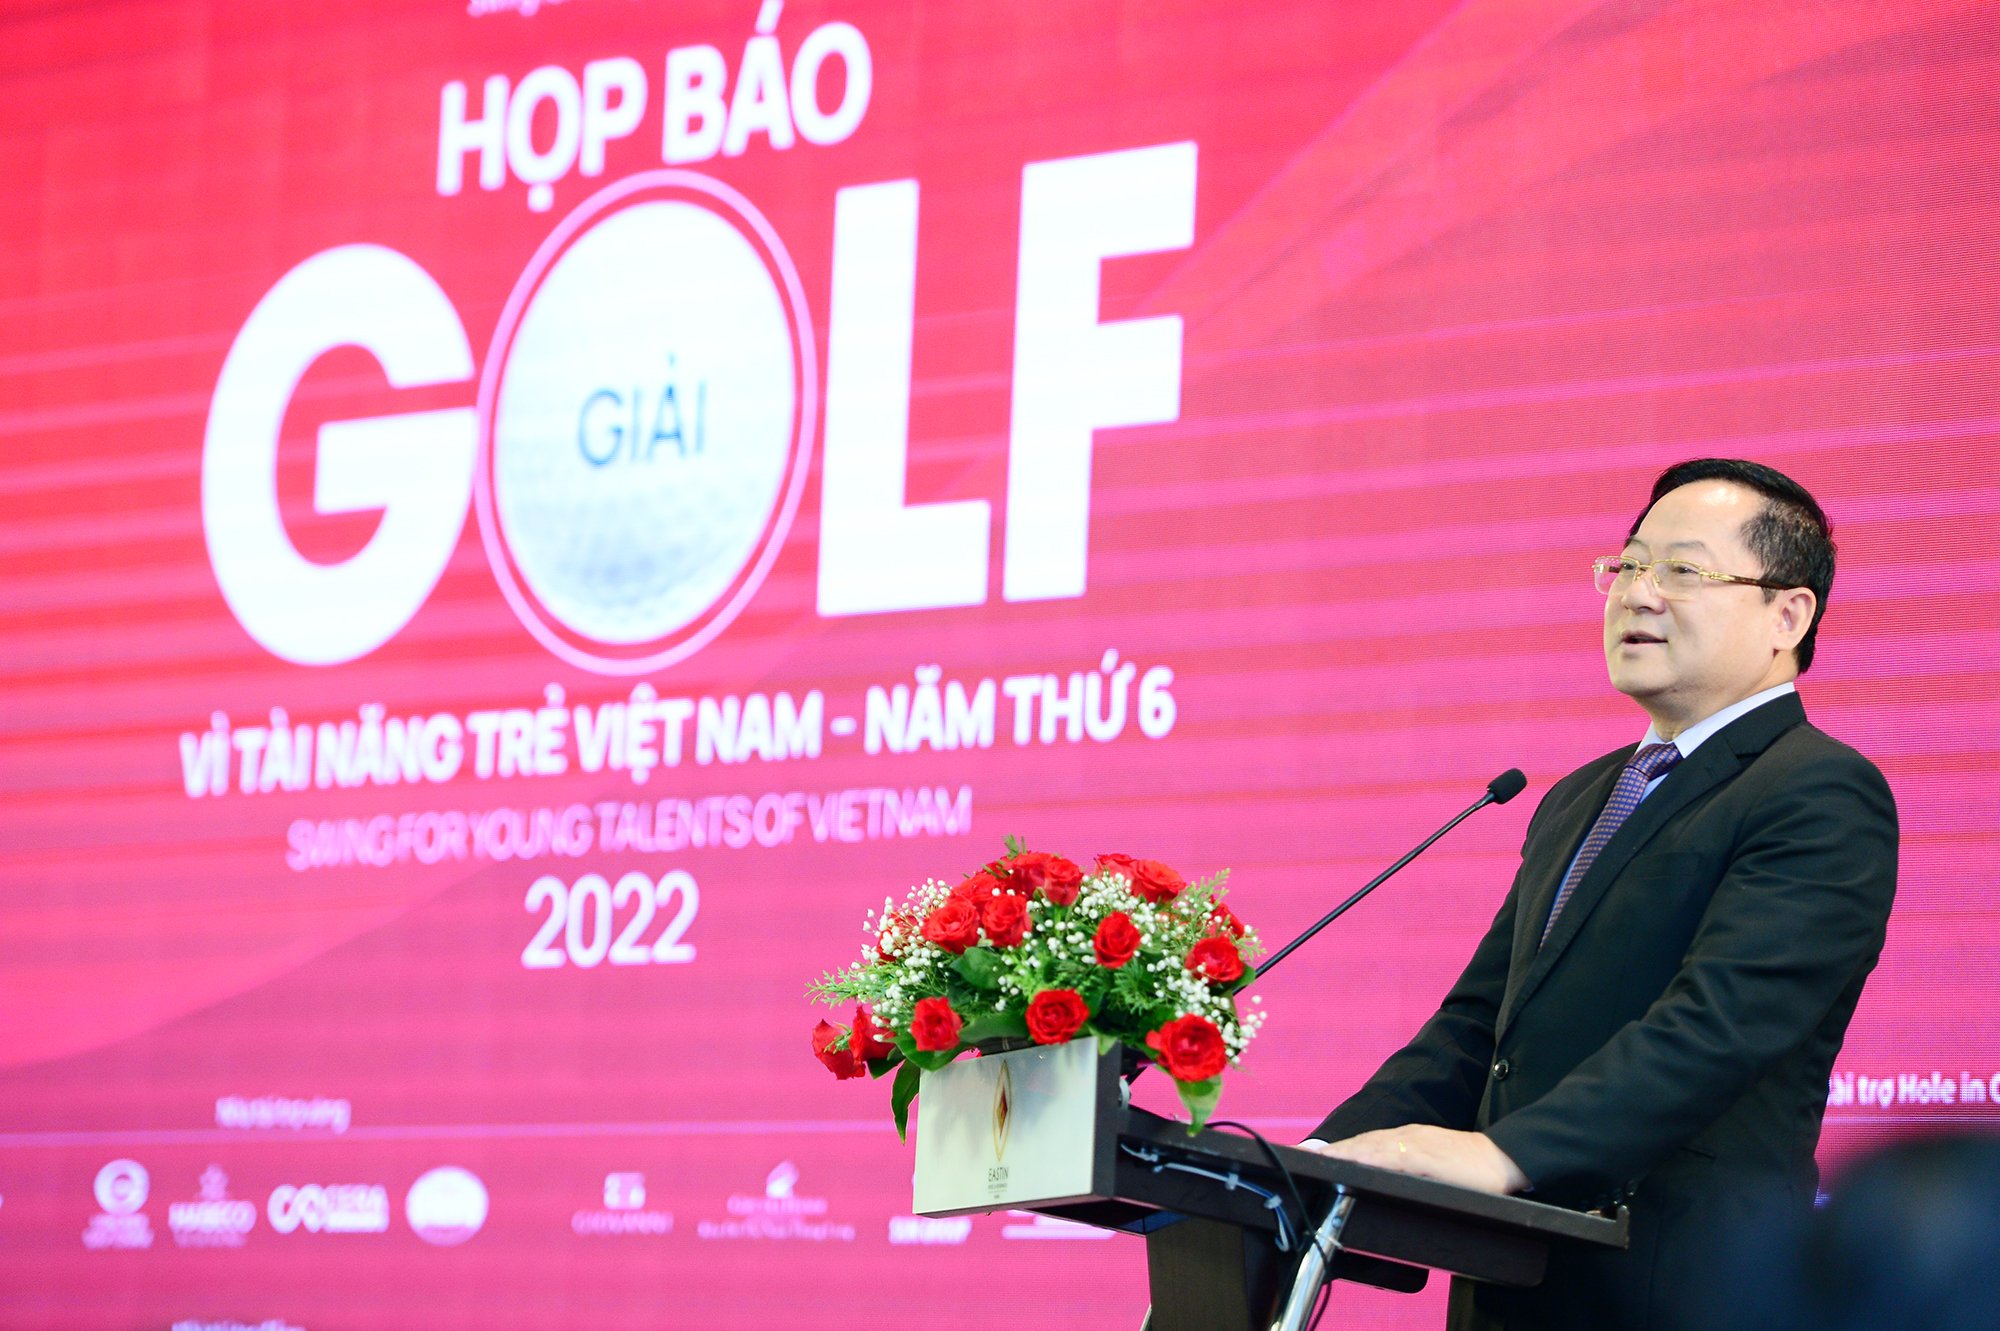 Hoa hậu Đỗ Thị Hà thật thà chia sẻ 1 điều khi làm đại sứ Tiền Phong Golf Championship 2022 - Ảnh 1.